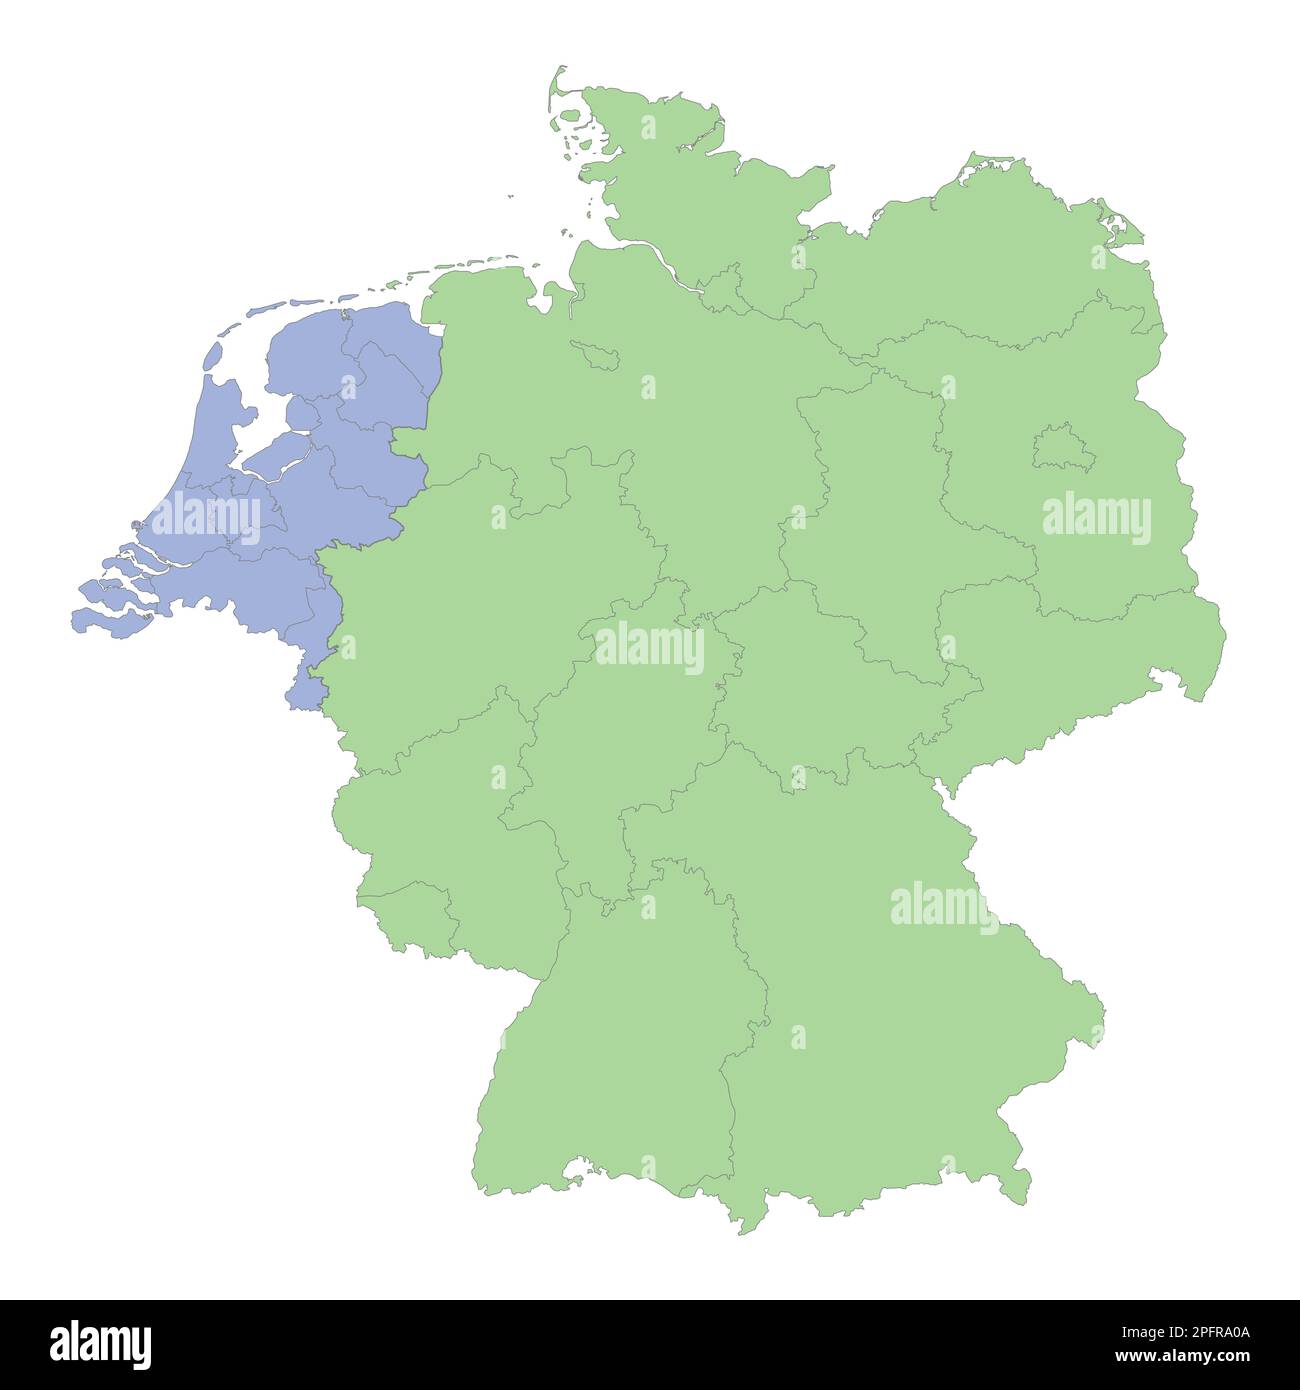 Mappa politica di alta qualità della Germania e dei Paesi Bassi con i confini delle regioni o delle province. Illustrazione vettoriale Illustrazione Vettoriale